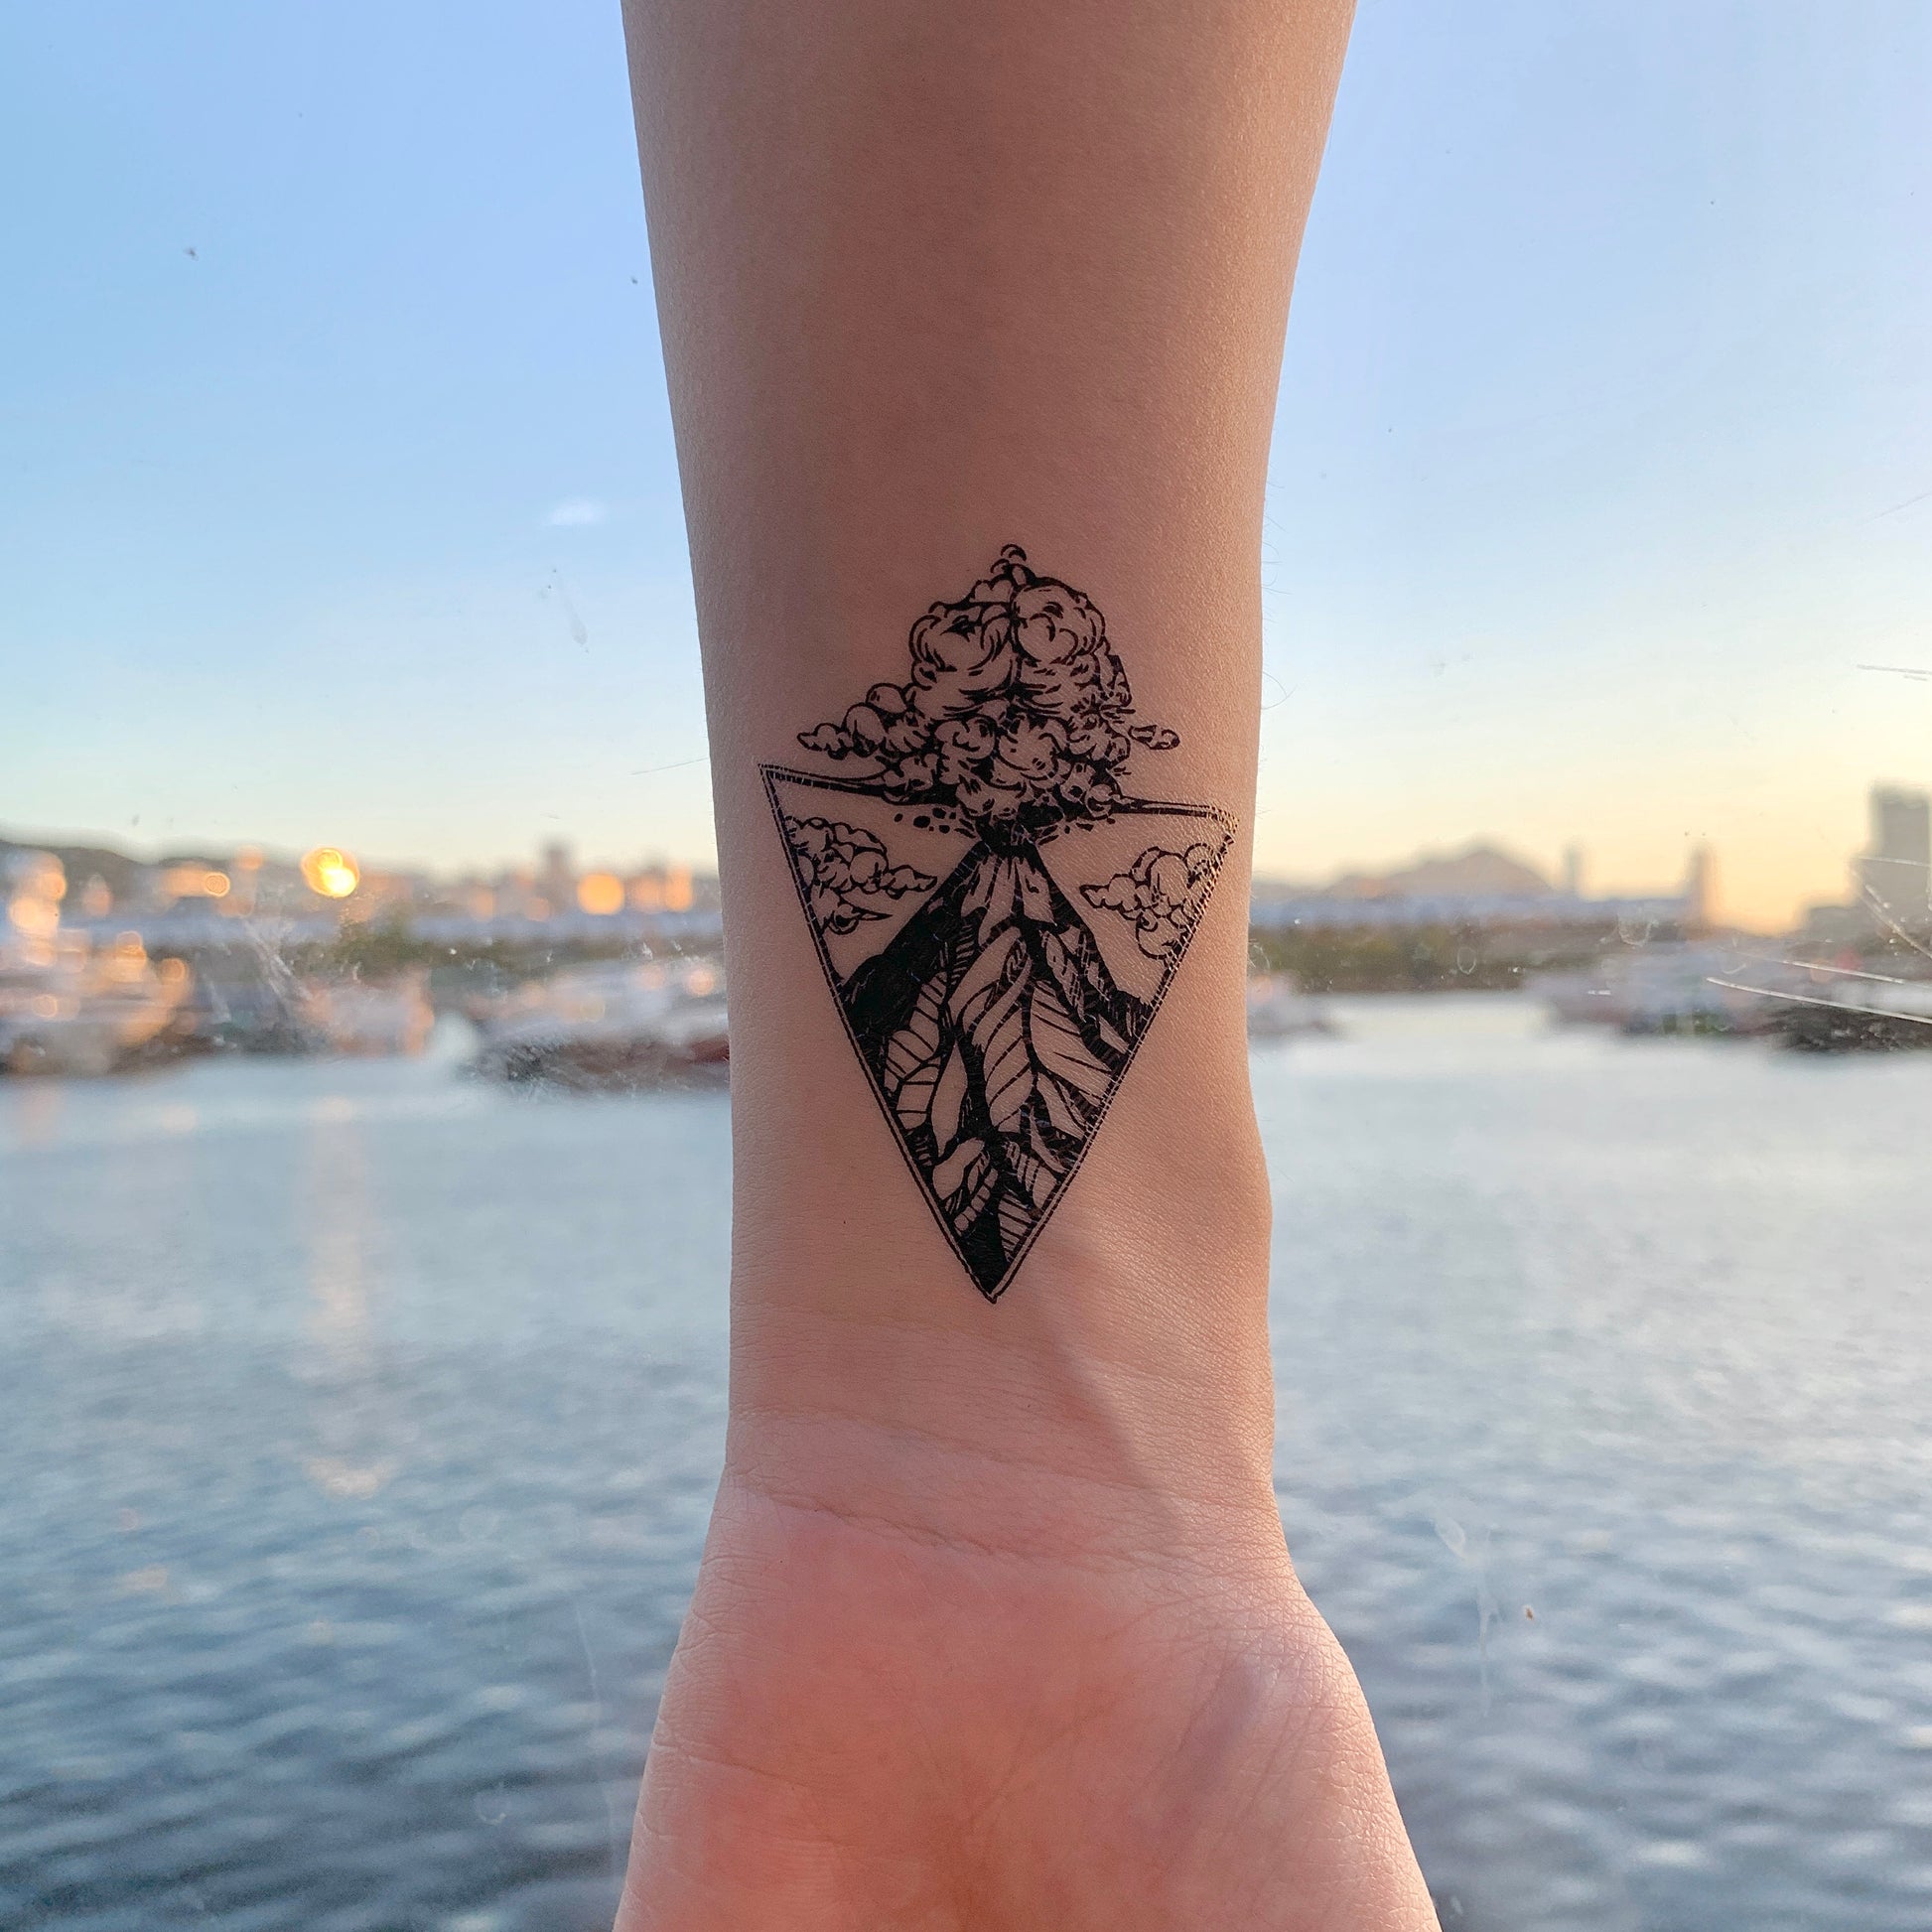 fake small volcano volcanic explosive nature triangle scene temporary tattoo sticker design idea on wrist